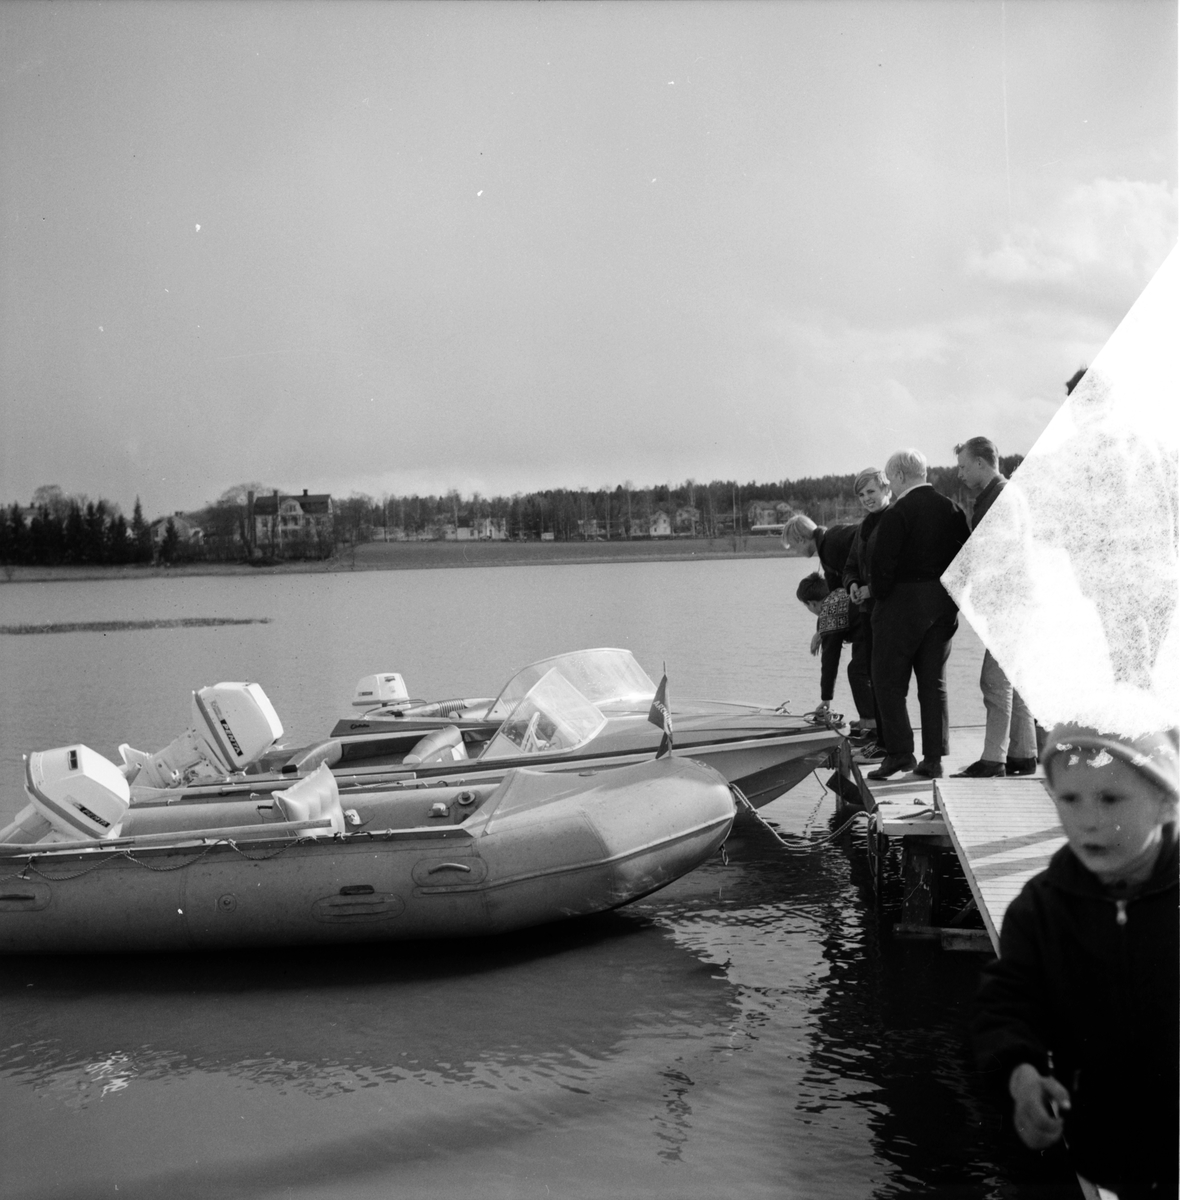 Bollnäs Båtdemonstration på Vågen,
19 Maj 1965